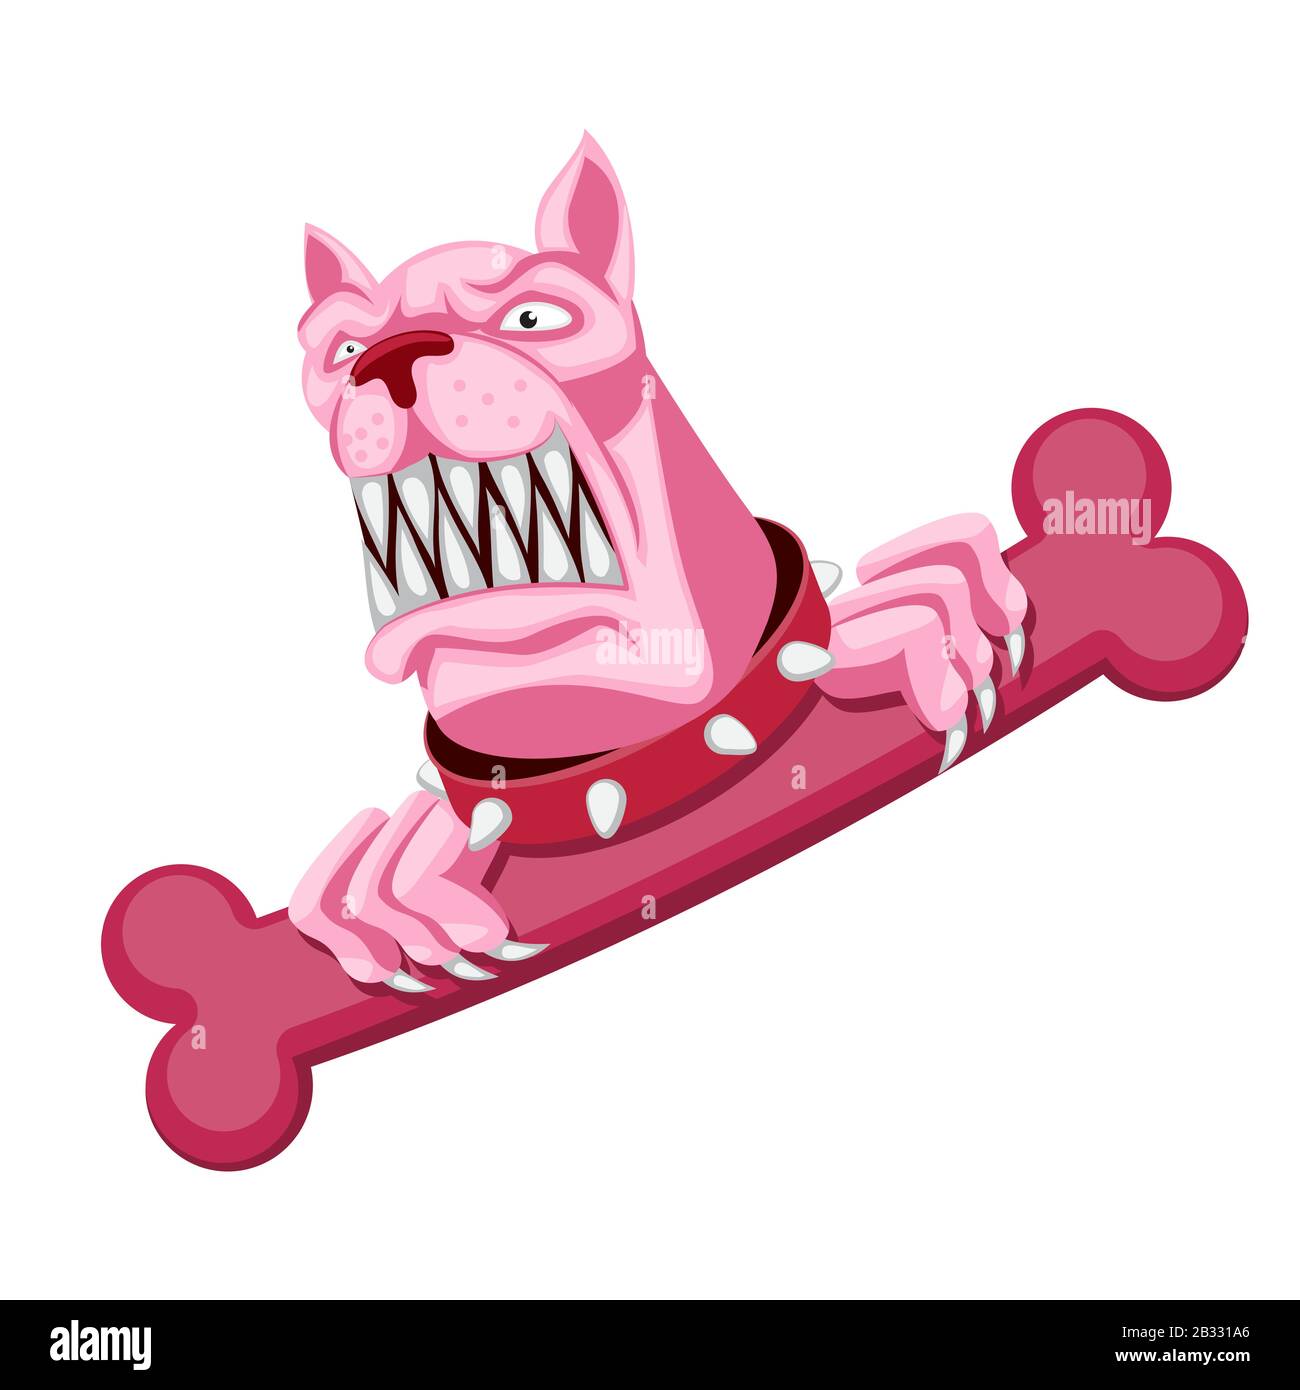 Der Charakter ist ein rosafarbener, wütender Hund mit Knochen und Kragen auf einem weiß isolierten Hintergrund. Vektorbild Stock Vektor